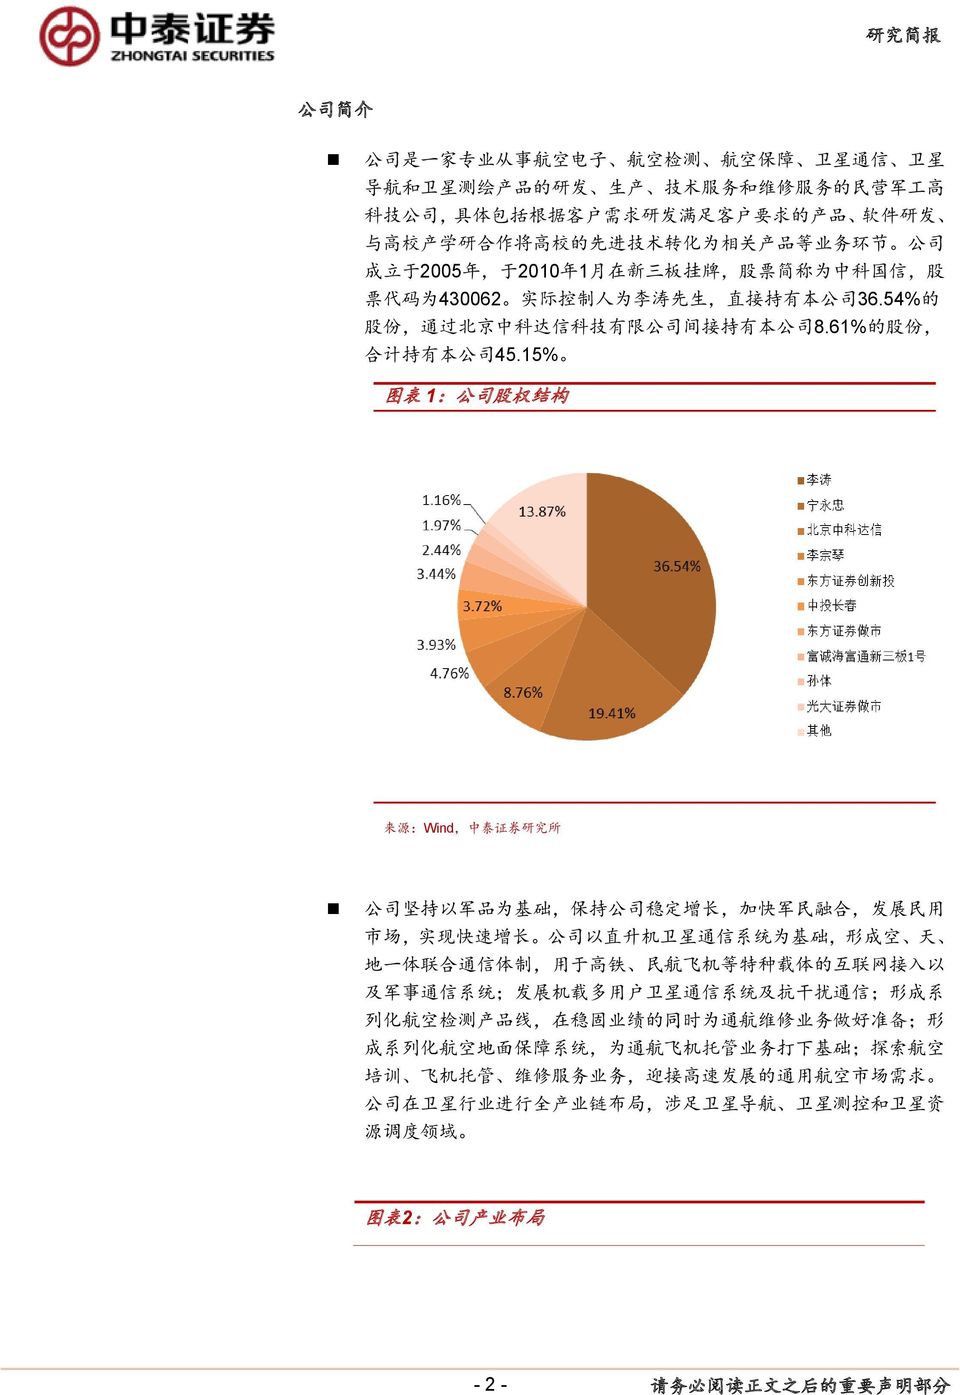 54% 的 股 份, 通 过 北 京 中 科 达 信 科 技 有 限 公 司 间 接 持 有 本 公 司 8.61% 的 股 份, 合 计 持 有 本 公 司 45.